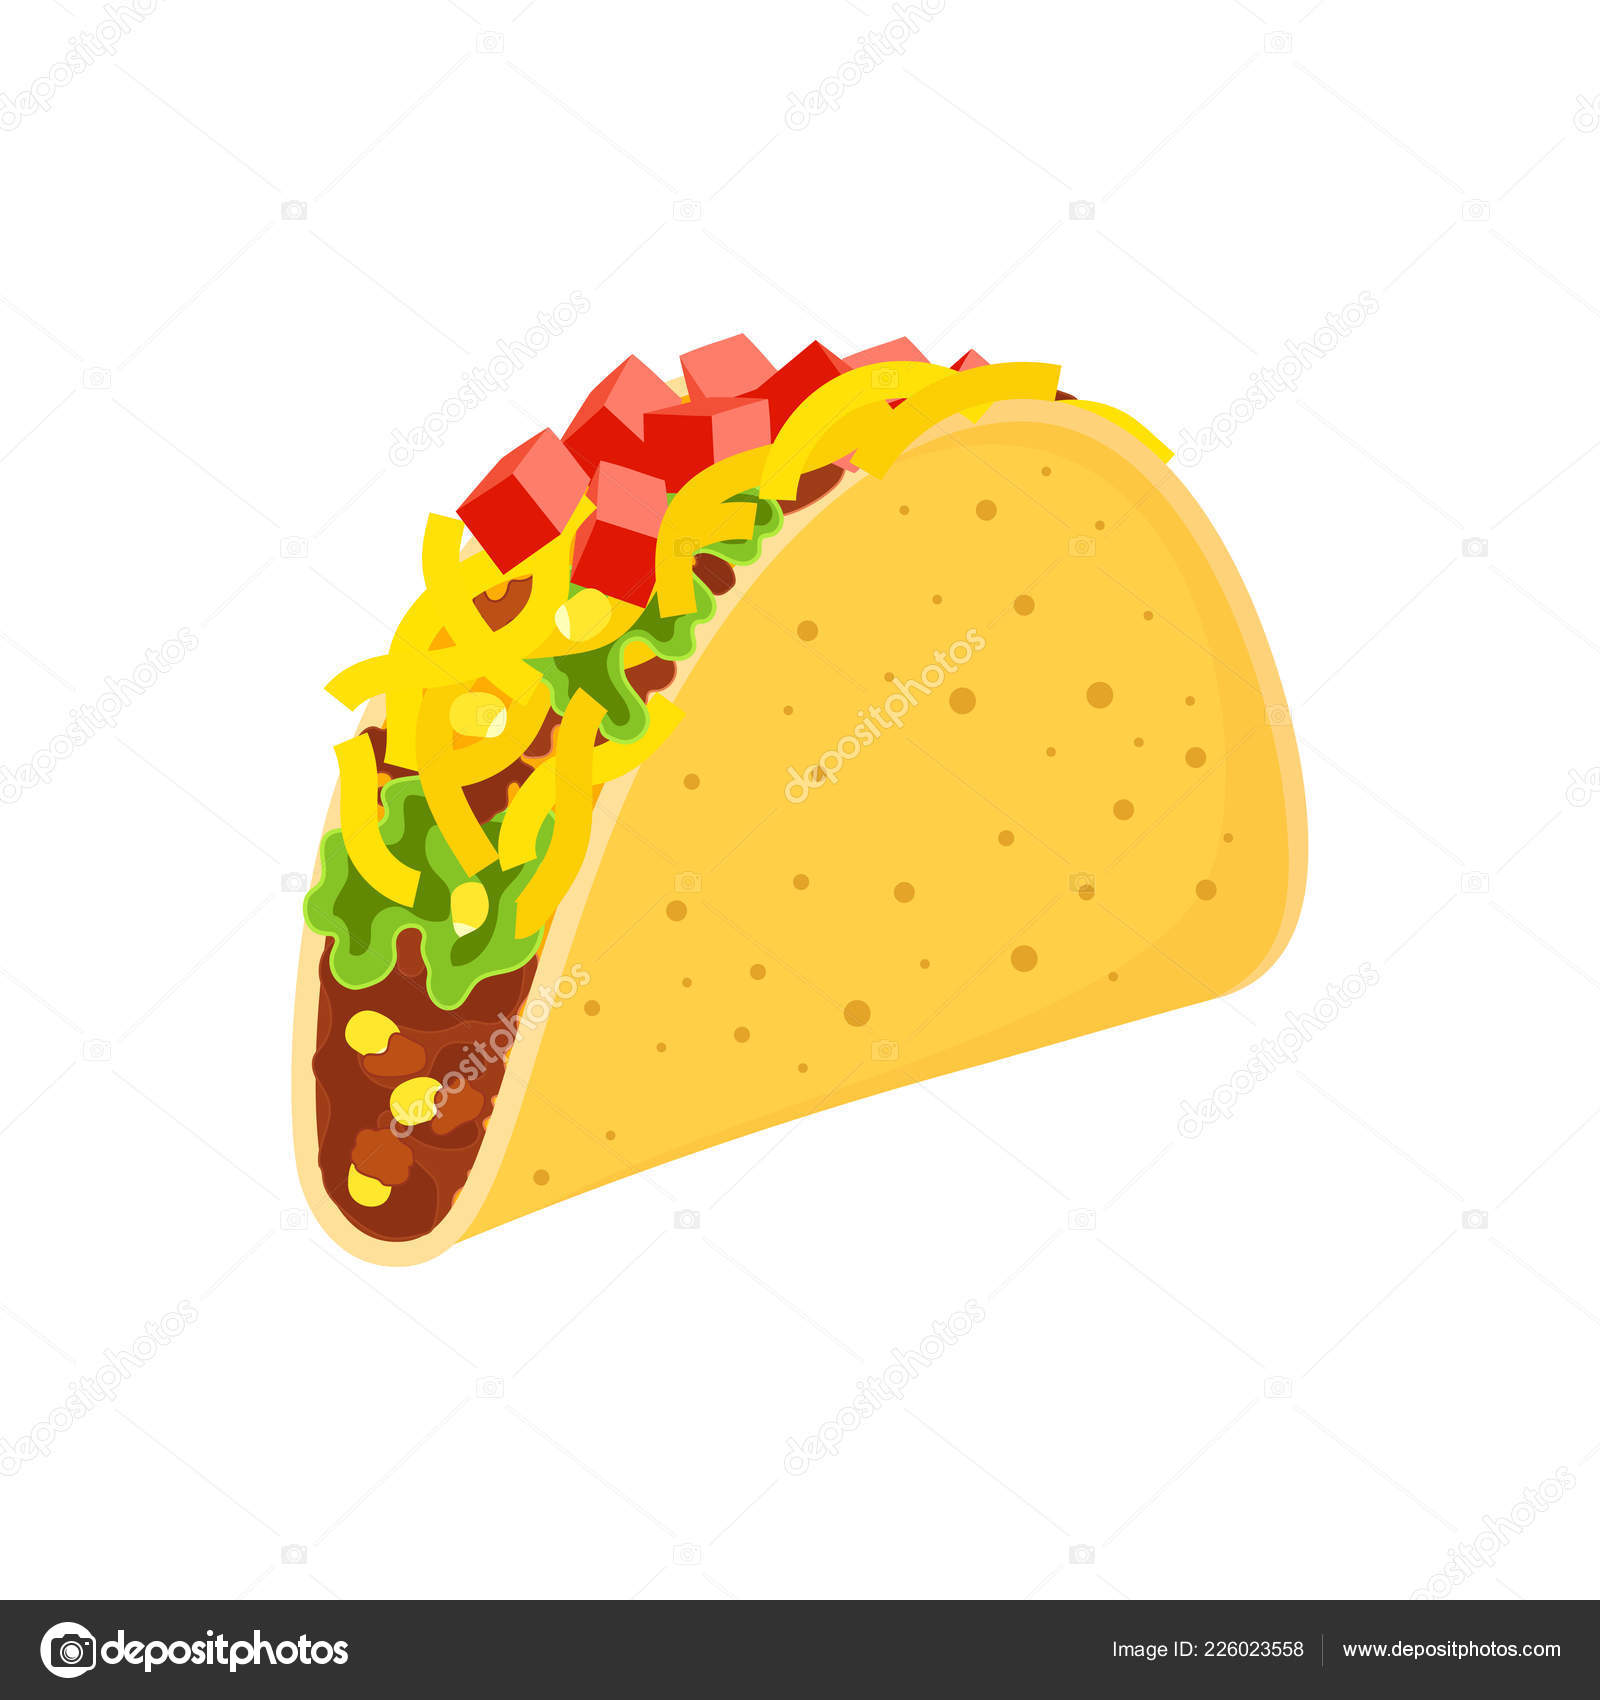 Taco cartoon Vector Art Stock Images | Depositphotos